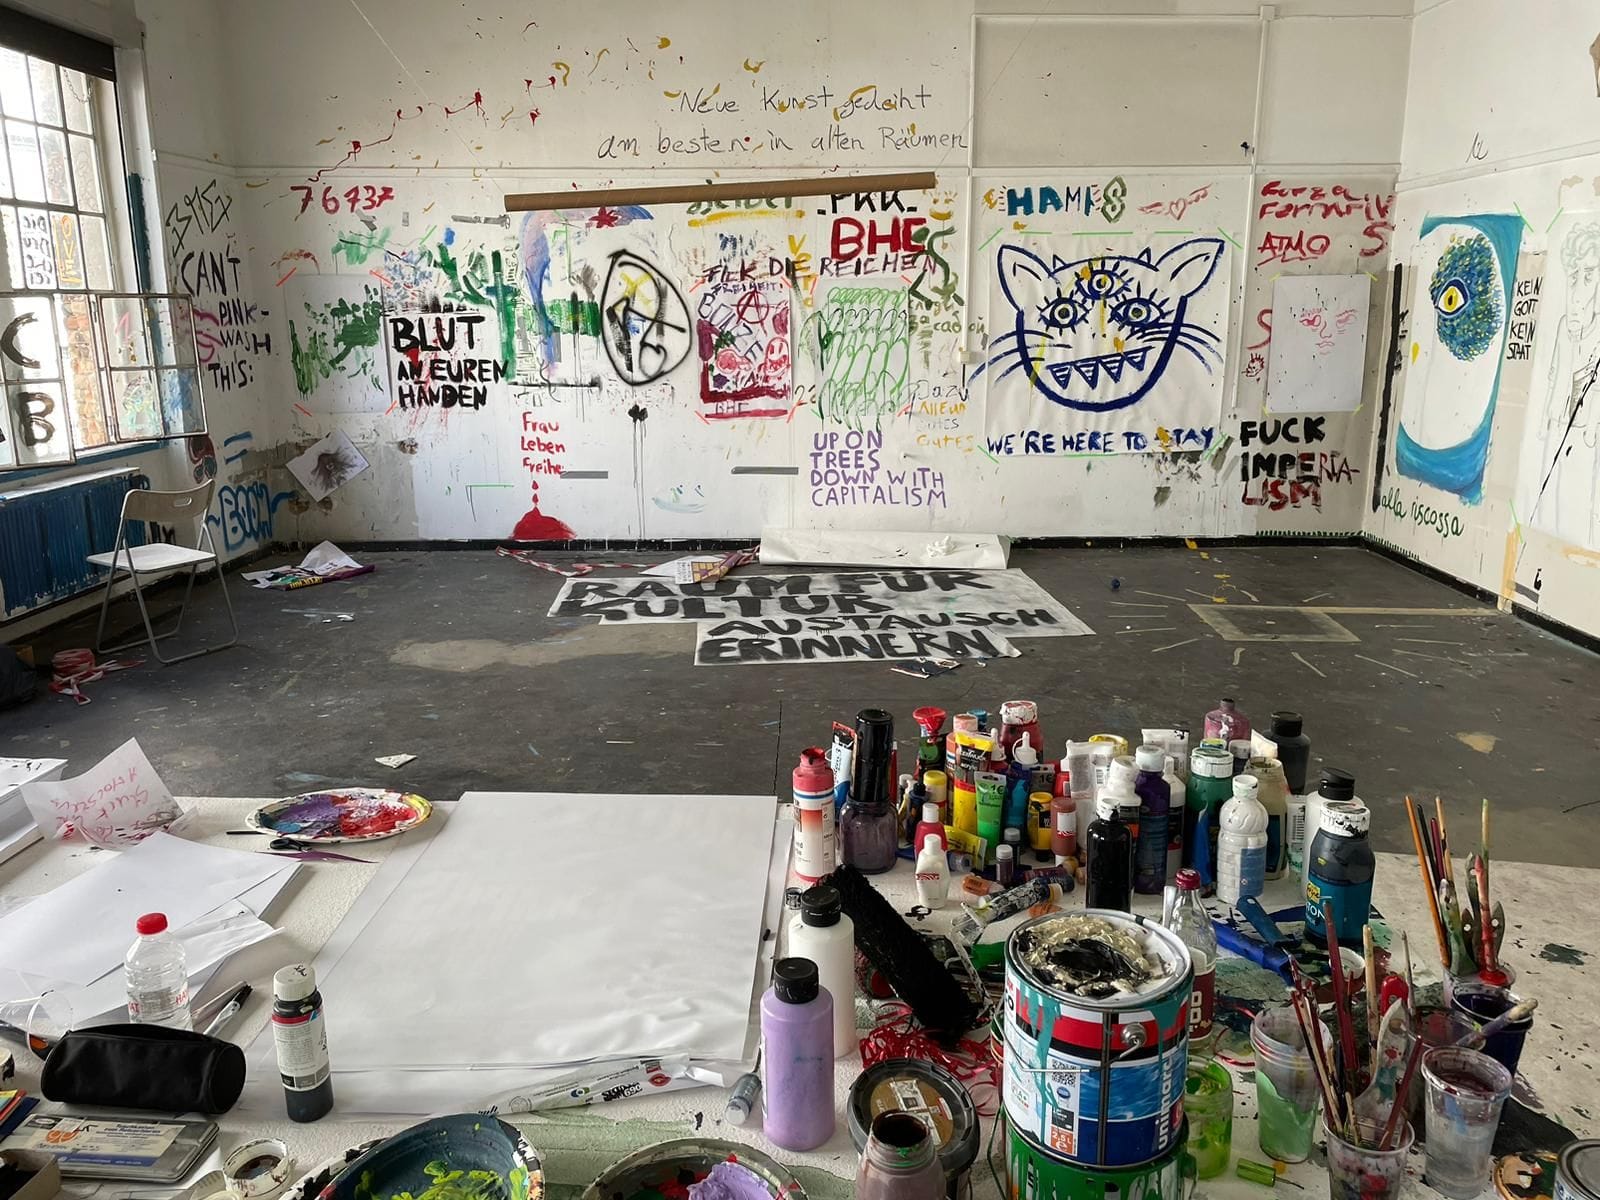 "Neue Kunst gedeiht am besten in alten Räumen": der Kunstraum der Aktivisten im zweiten Stock